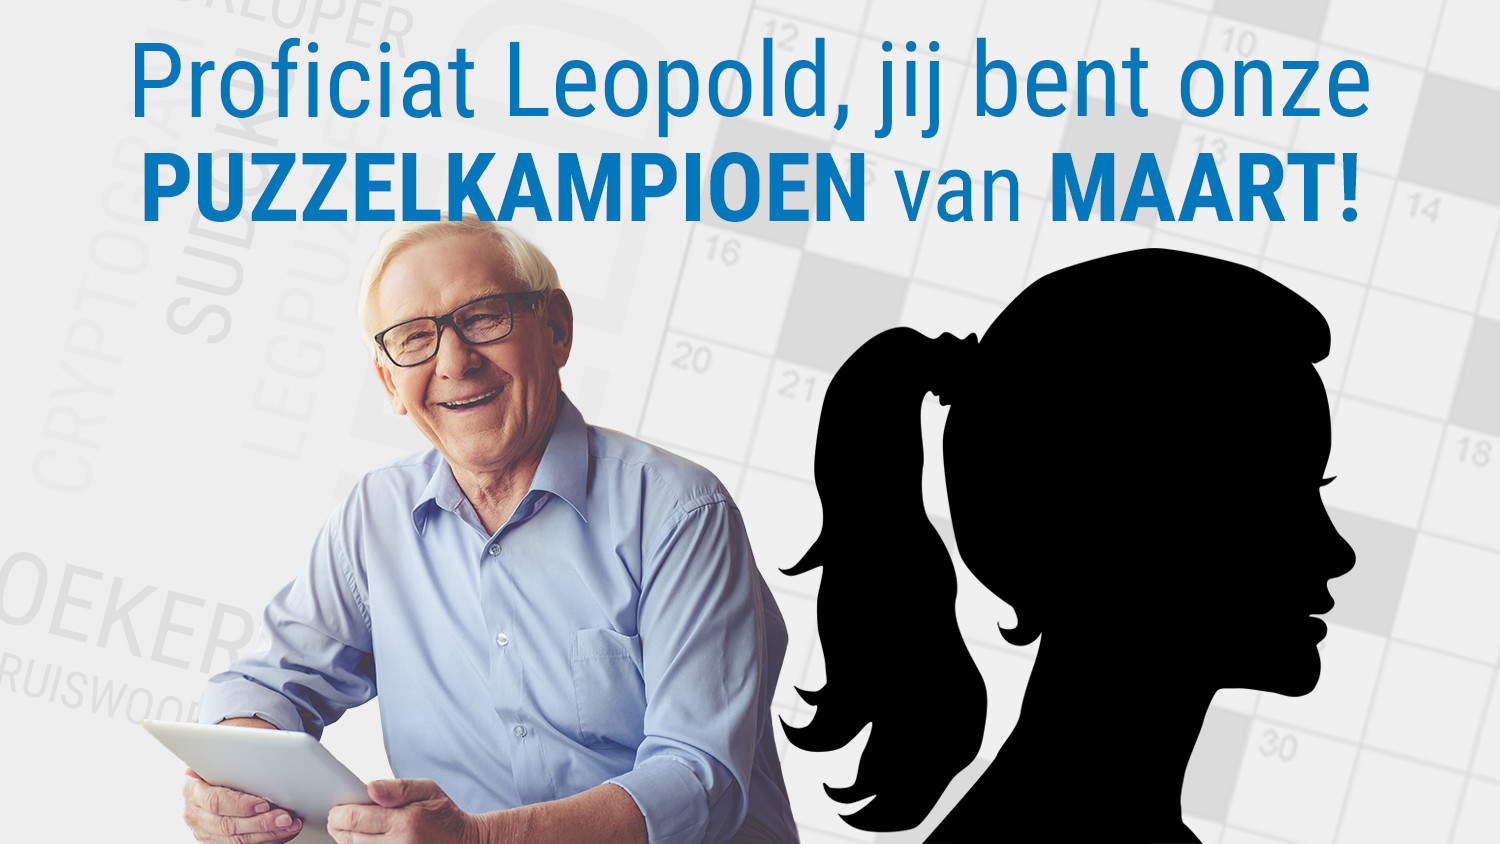 Leopold is PuzzelKampioen van maart!